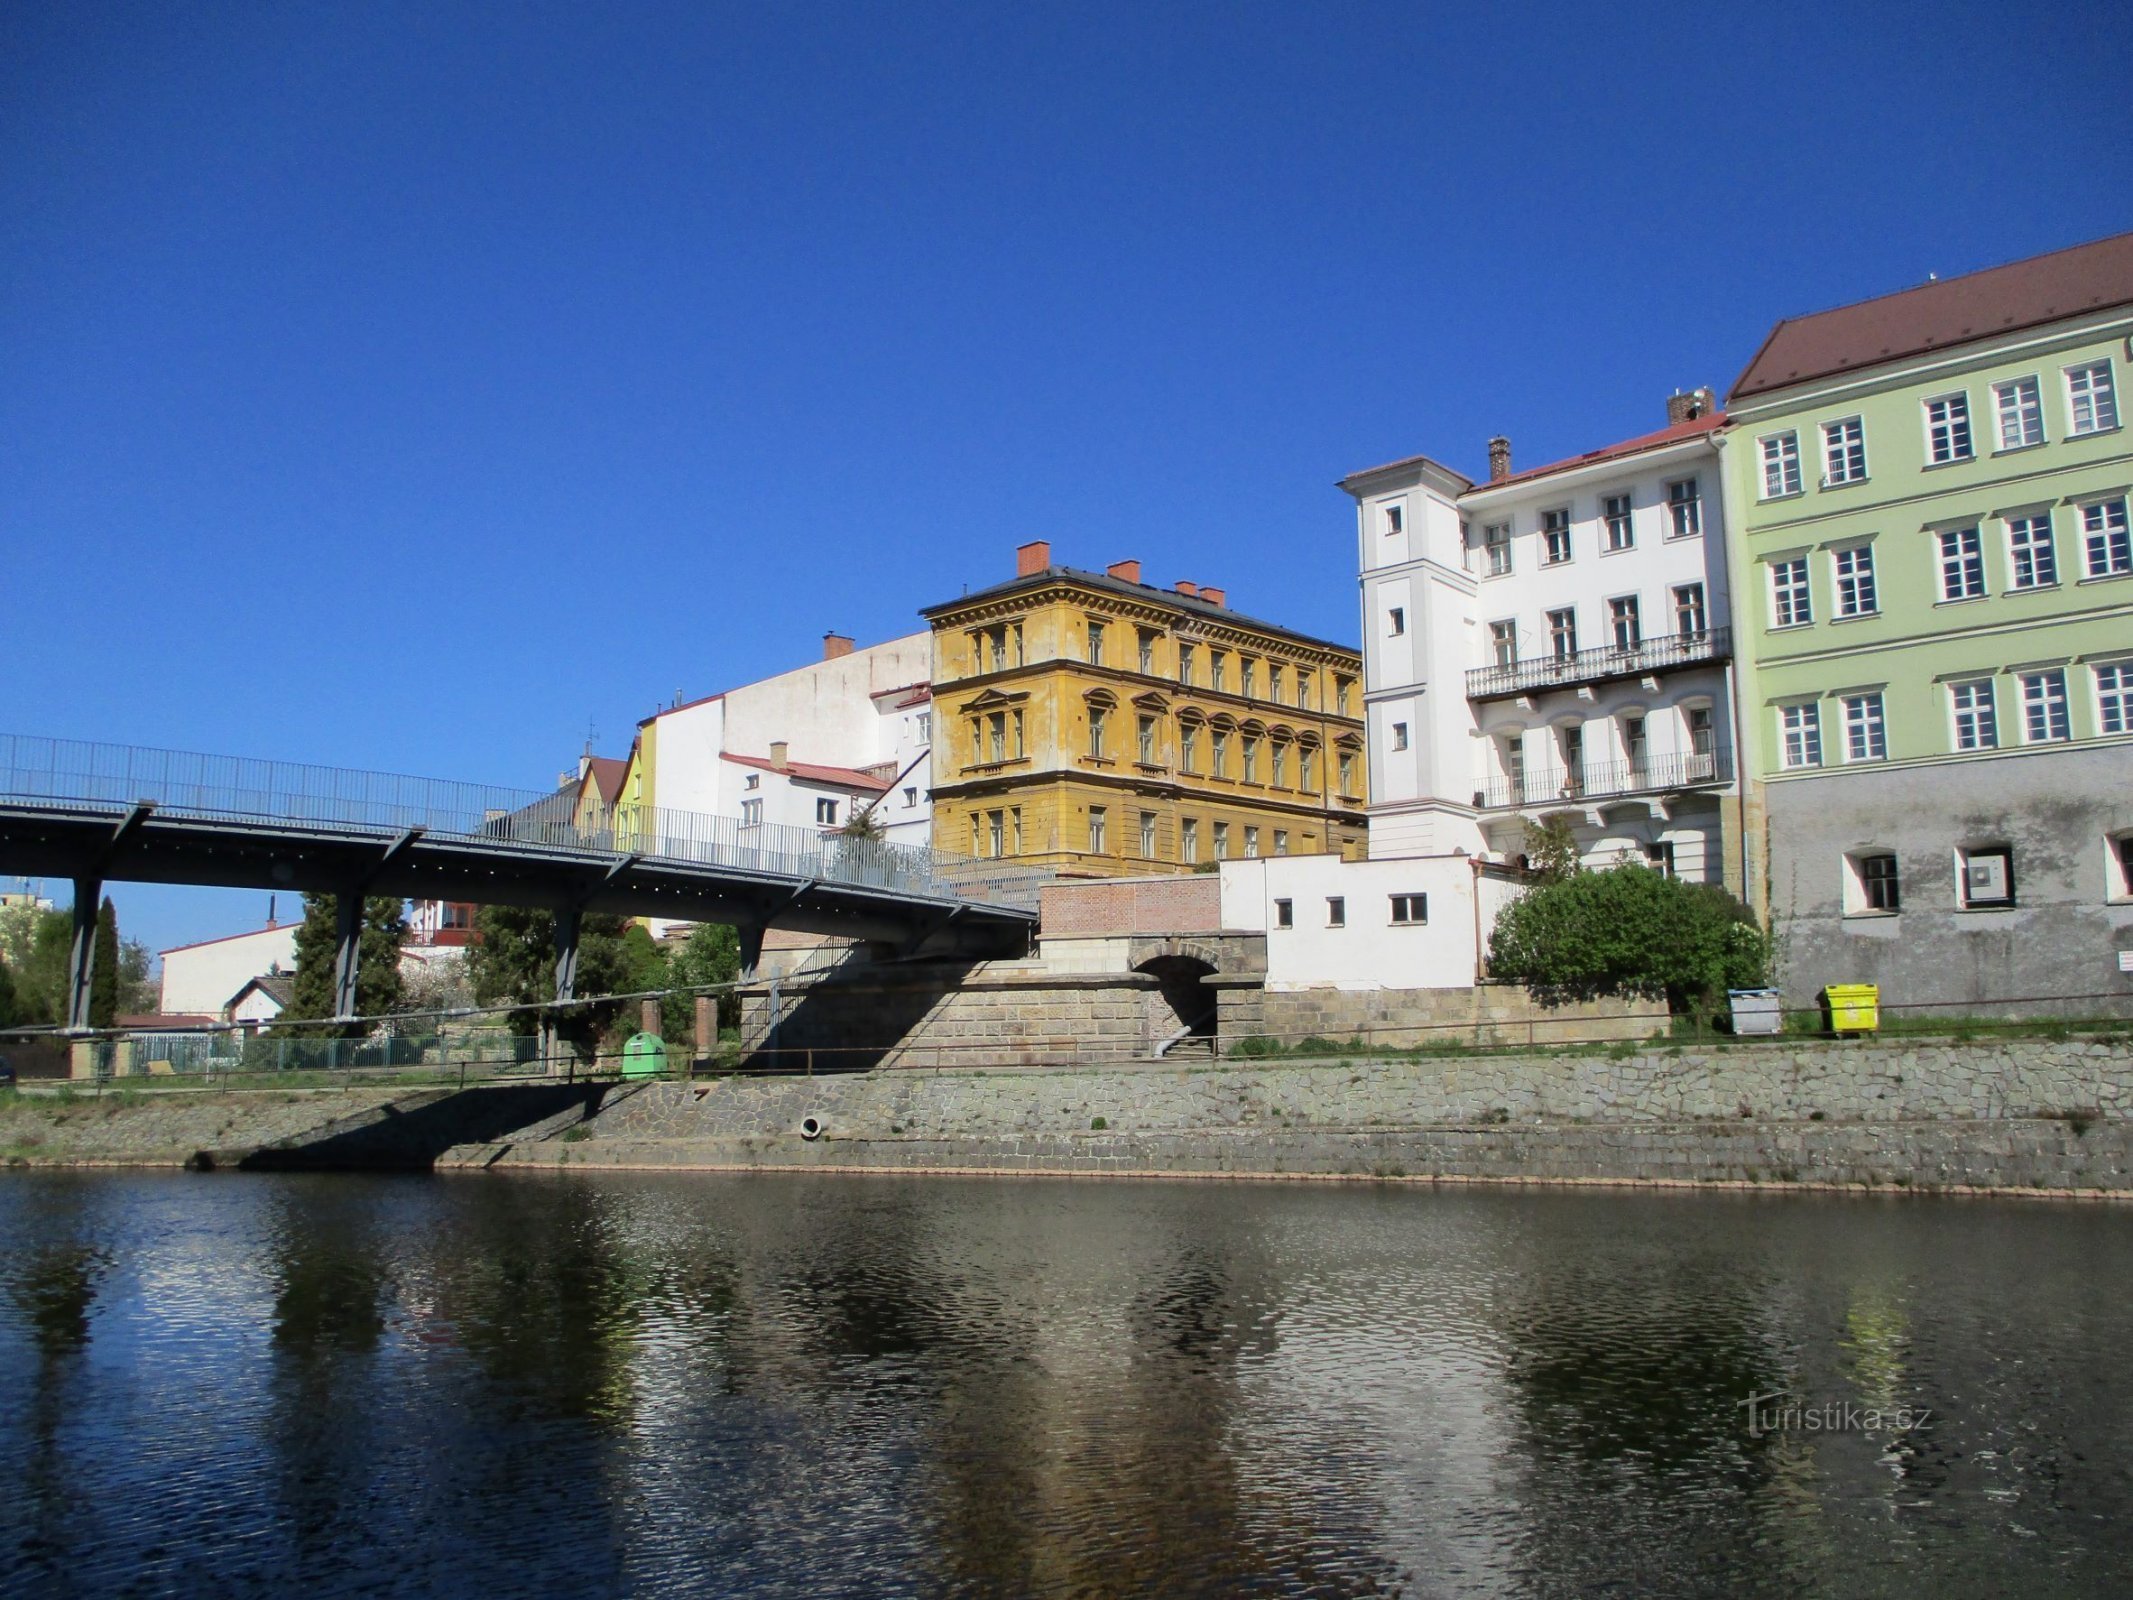 Comenius Bridge (Jaroměř, 22.4.2020/XNUMX/XNUMX)